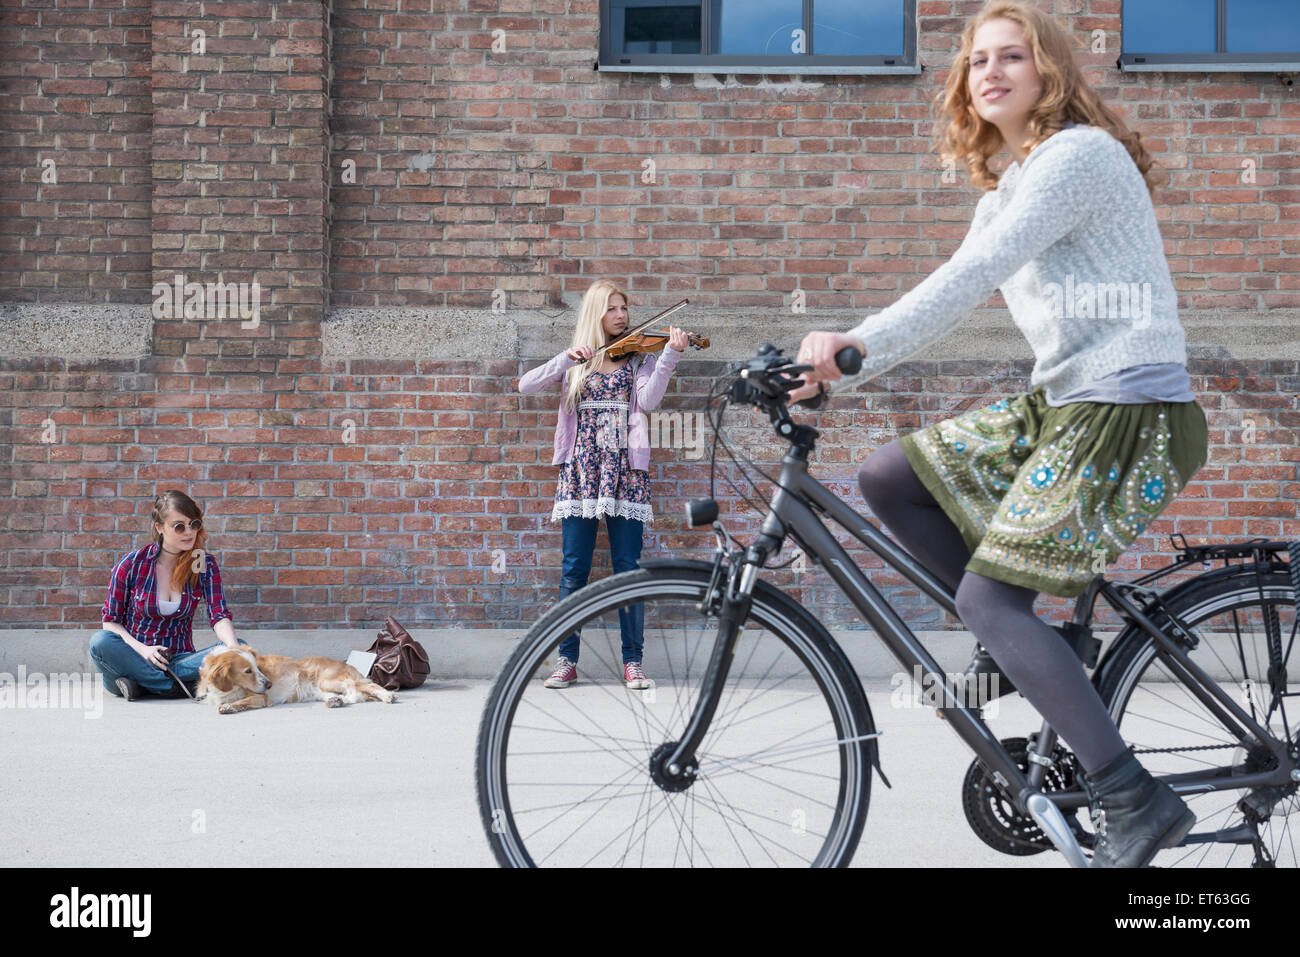 Mujer montando bicicleta en calle con adolescente tocando el violín en el fondo, Munich, Baviera, Alemania Foto de stock